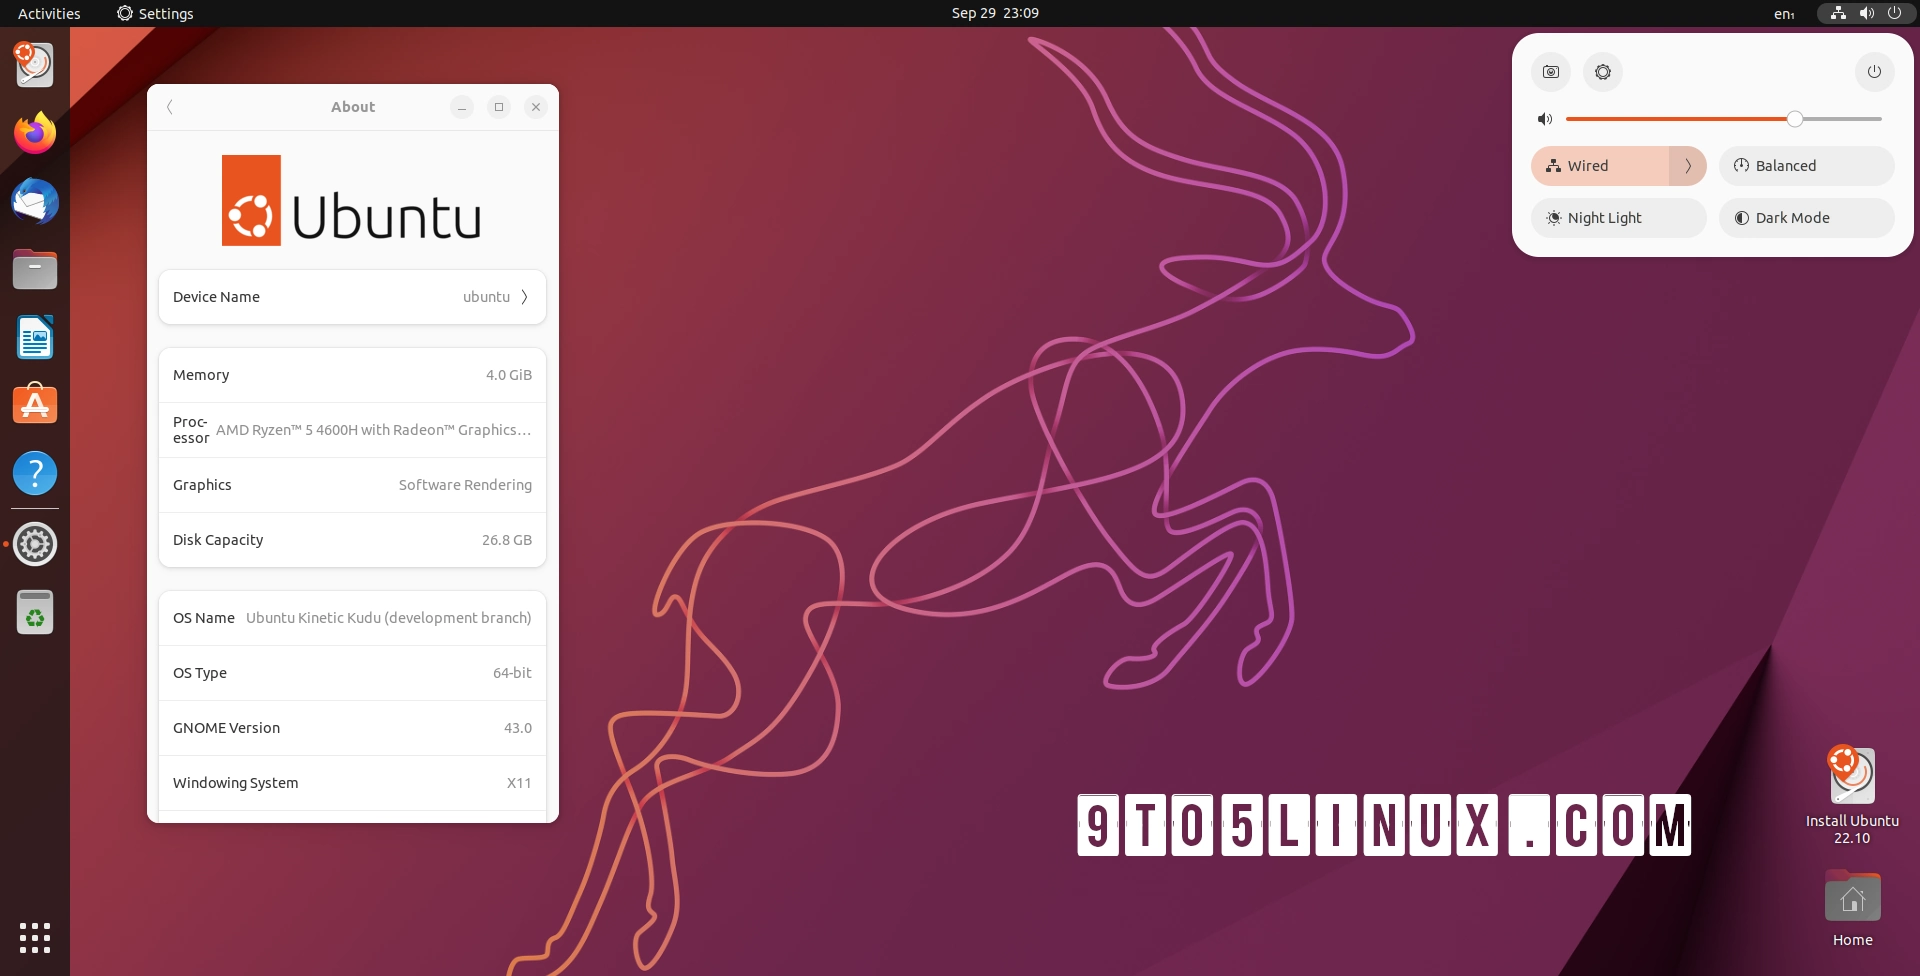 Ubuntu 22.10 (Kinetic Kudu) Beta Released with GNOME 43, Linux Kernel 5.19